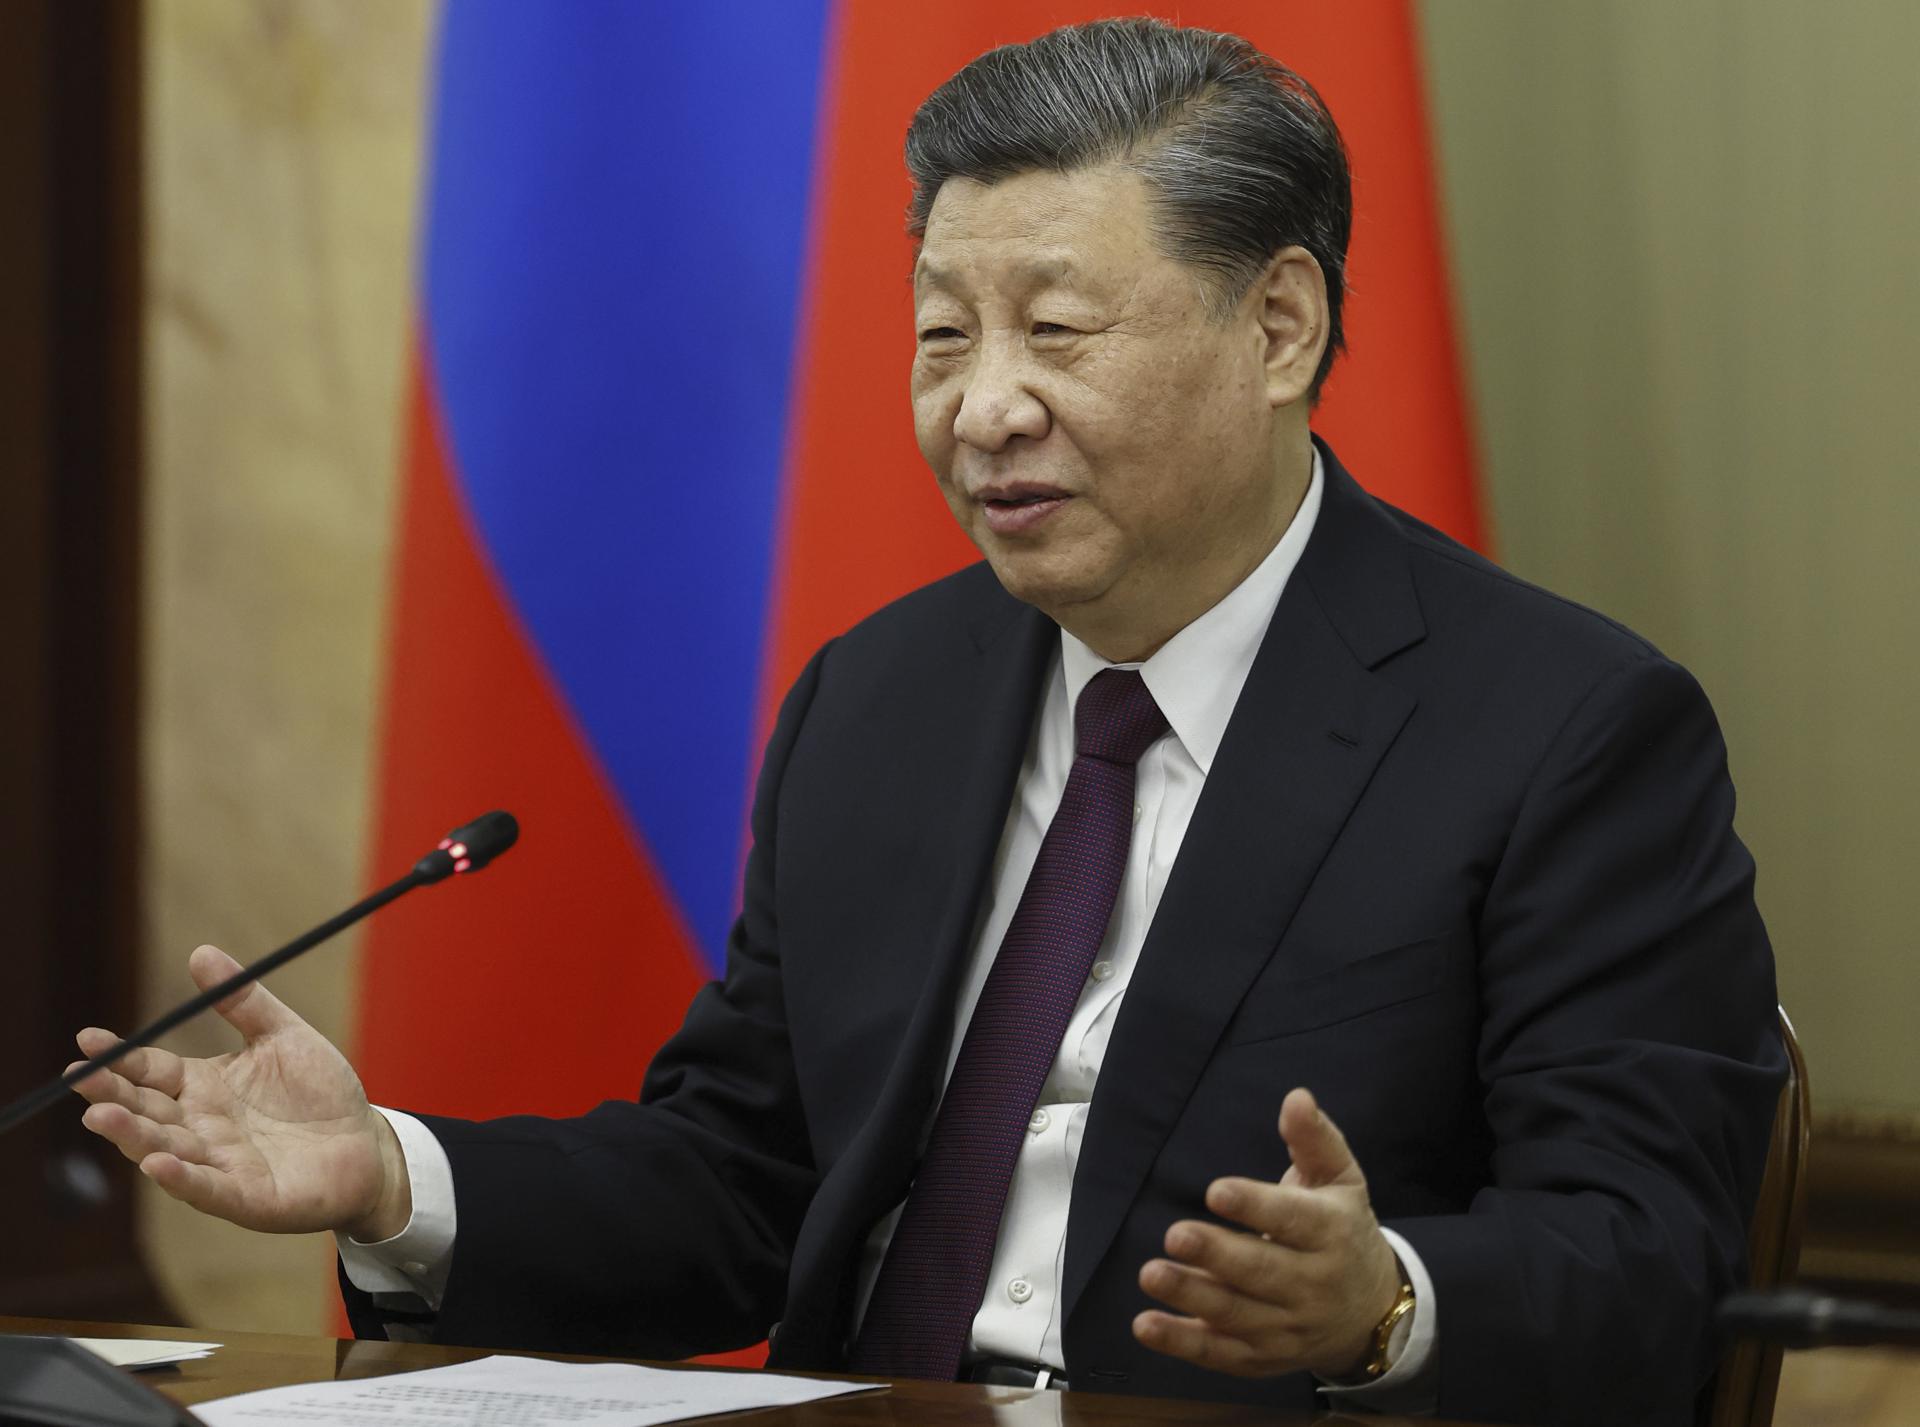 Tras reunión y banquete, Xi Jinping invitó a su amigo Putin a visitar China